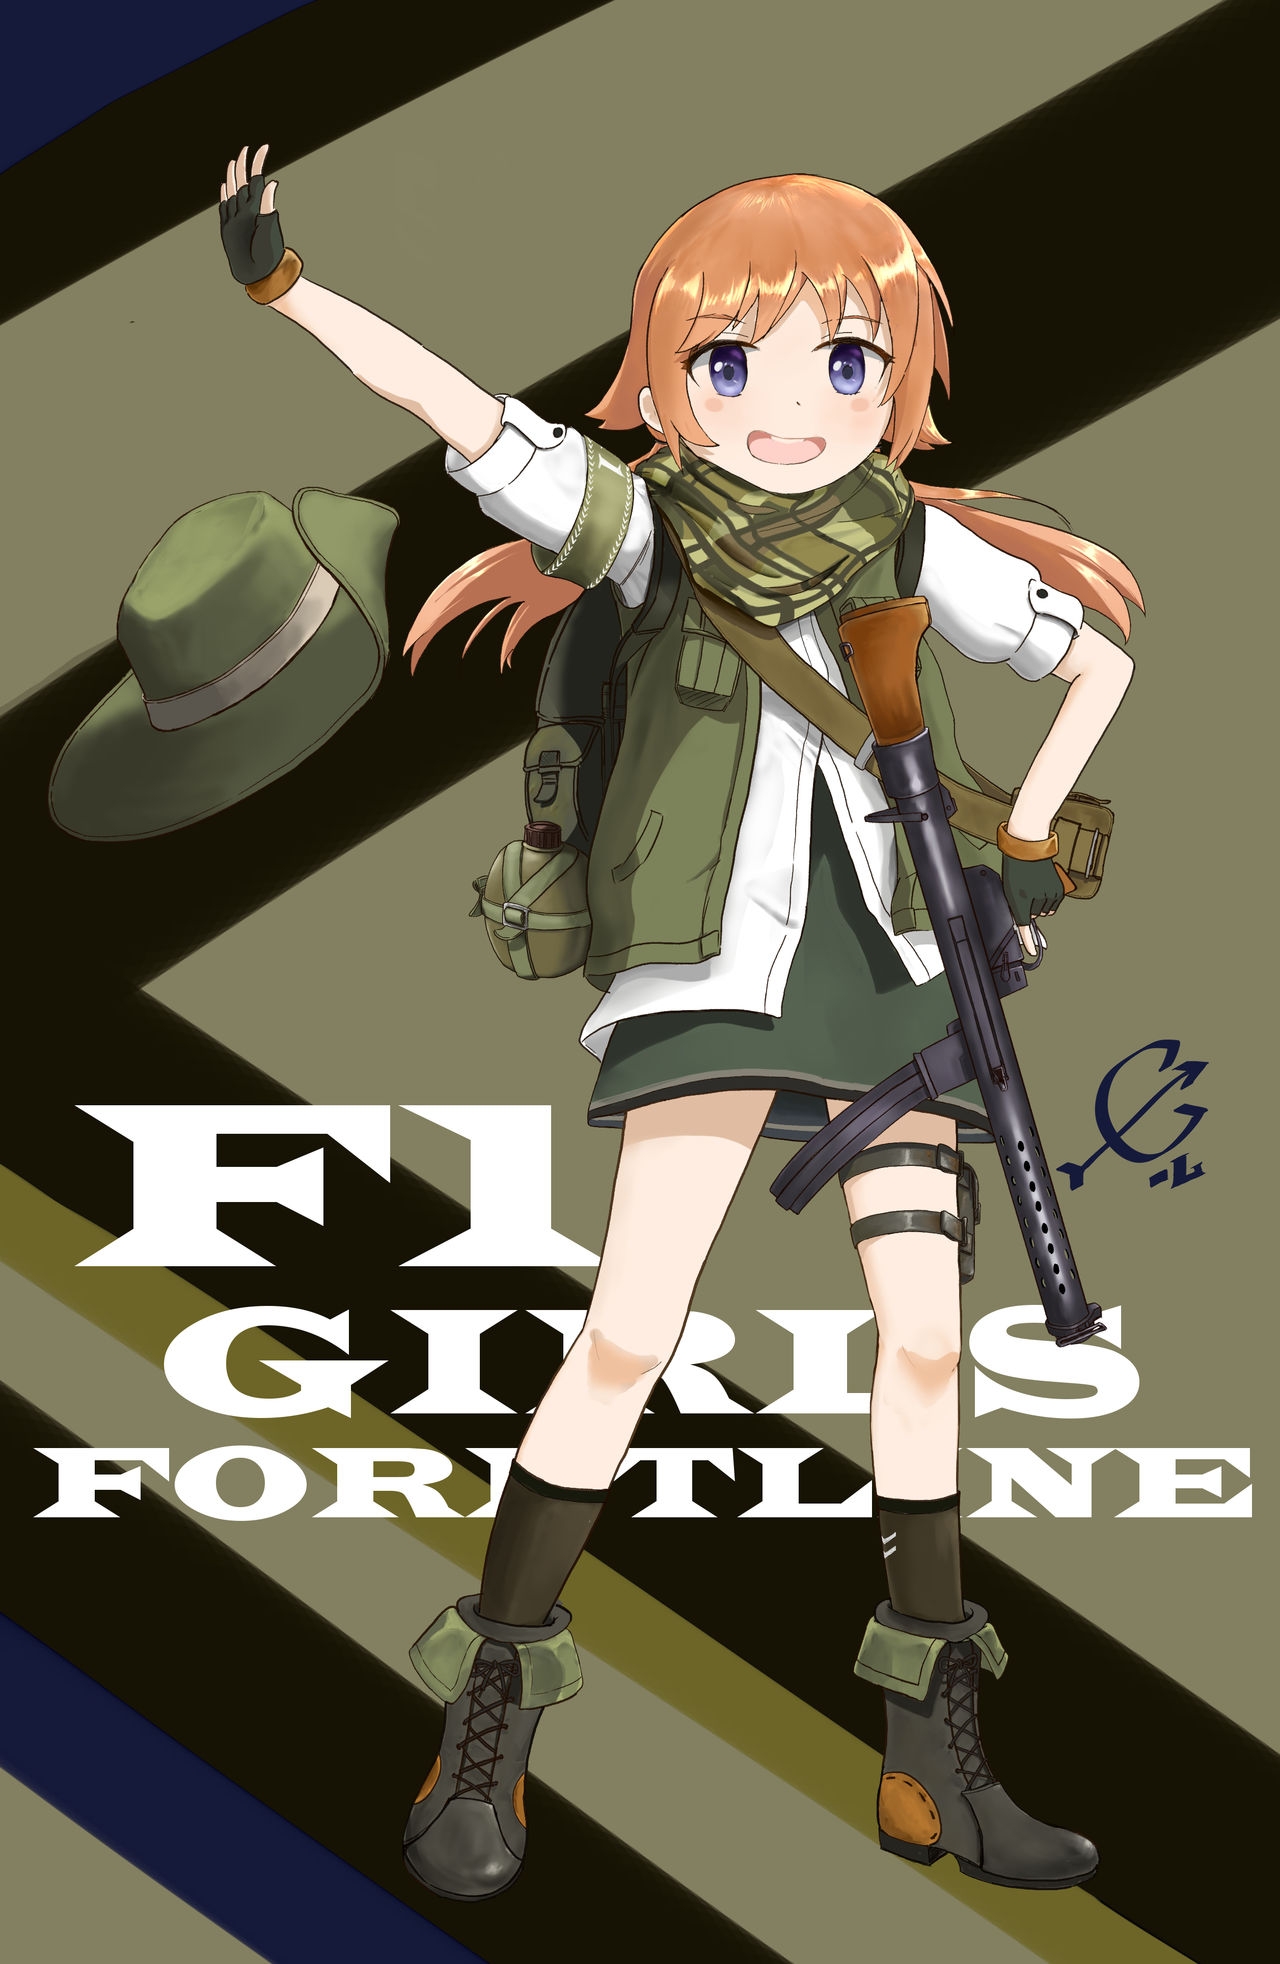 Girls' Frontline Character Fan Art Gallery - F1 1